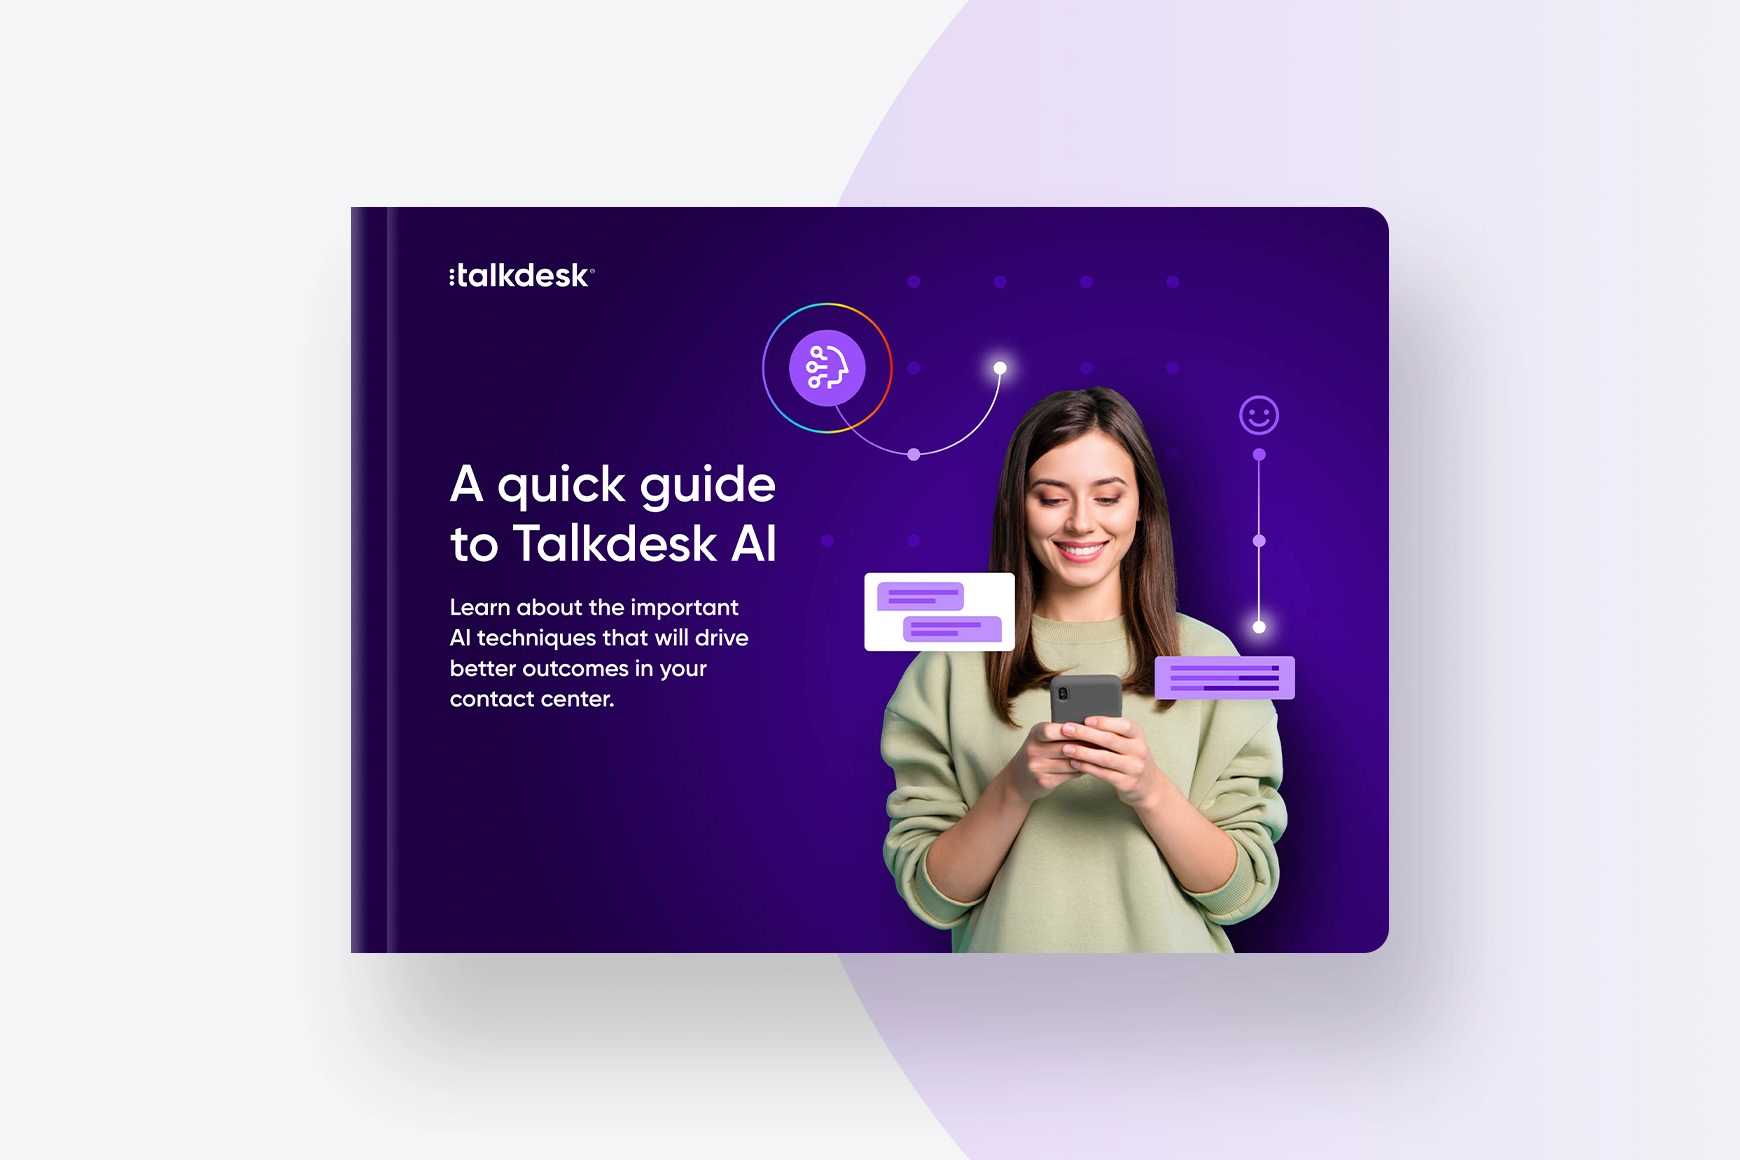 Una guía rápida para Talkdesk AI